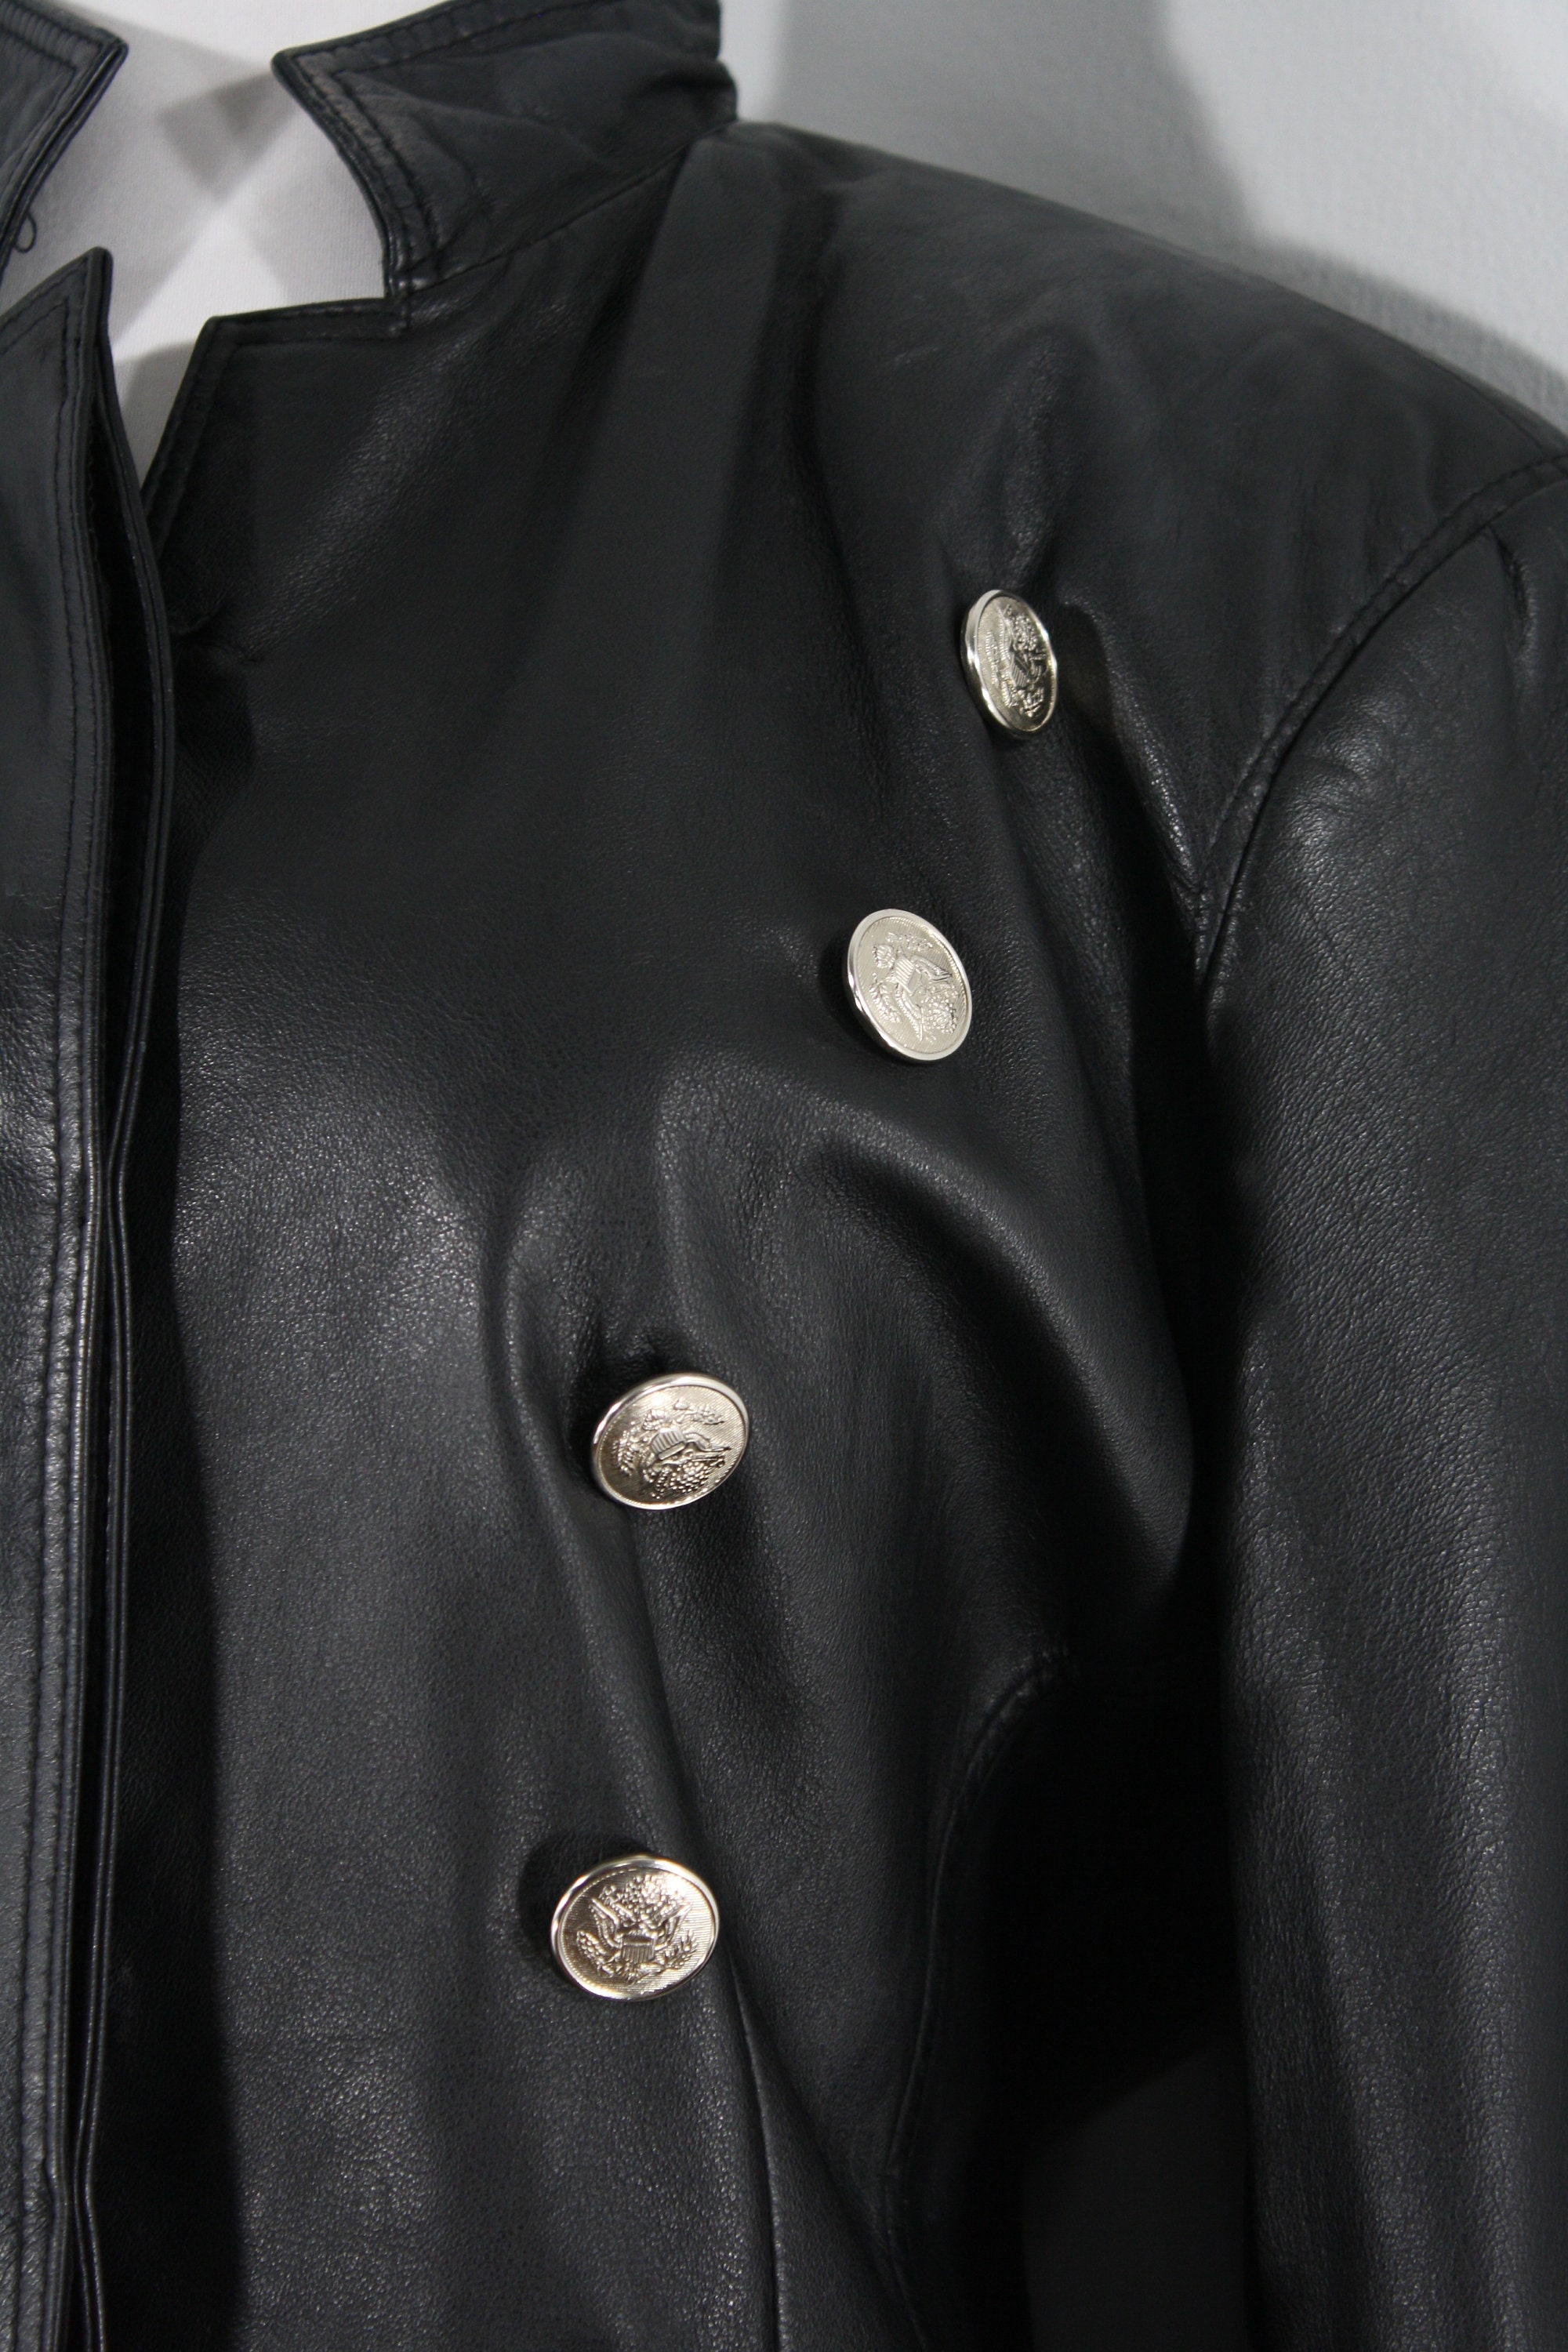 1990s Black Leather Jacket Medium to Large 90s Black Double - Etsy